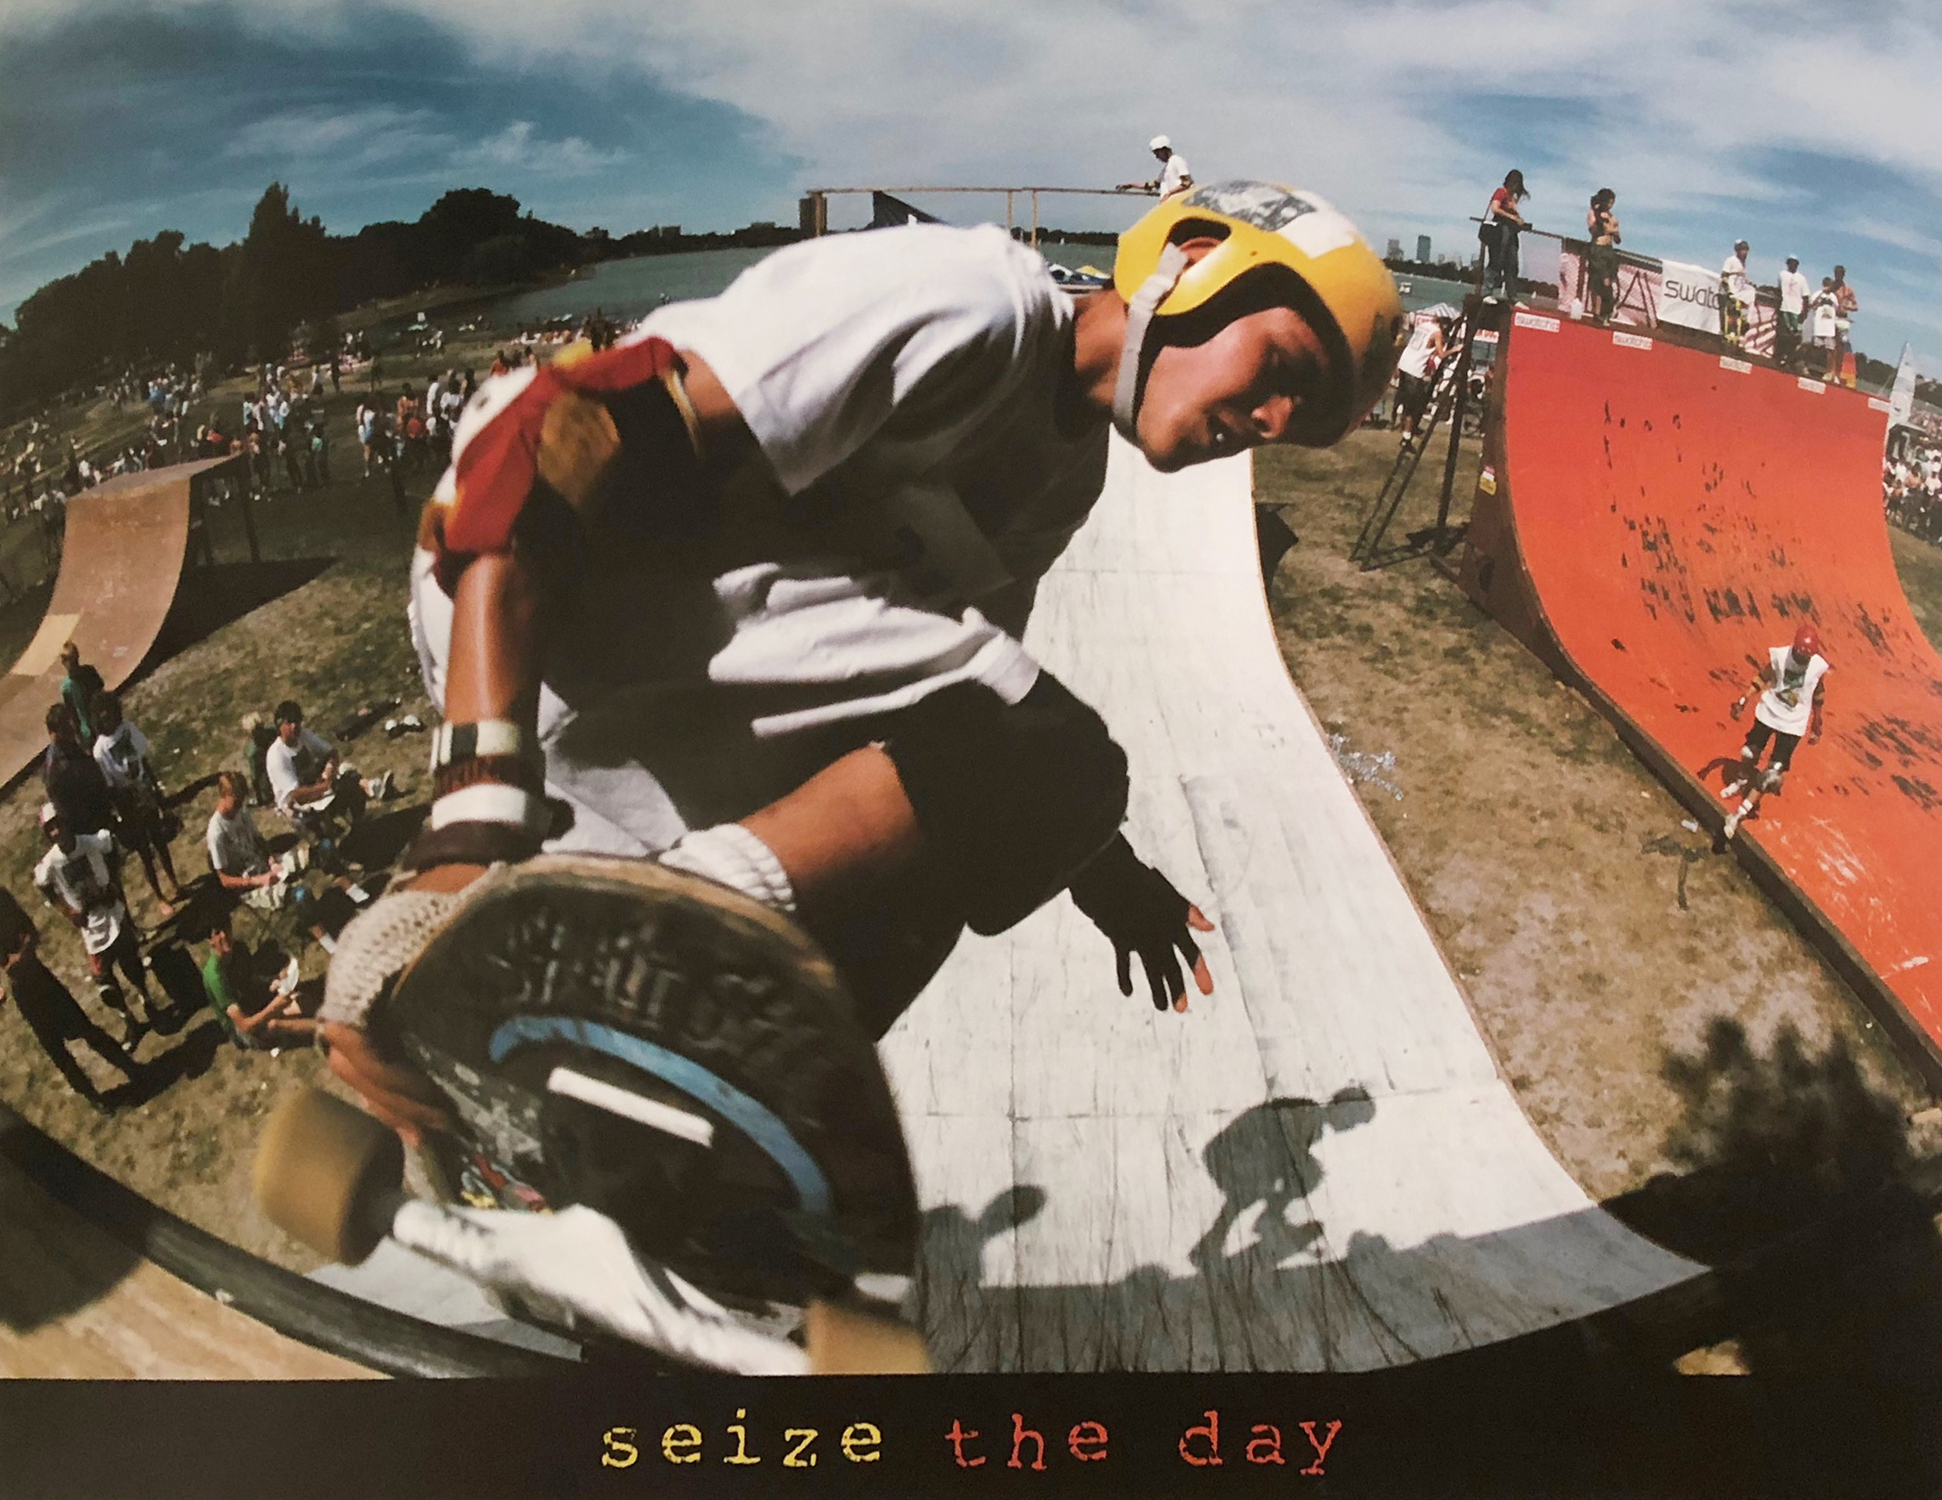 Seize the Day - Skateboard Ramp